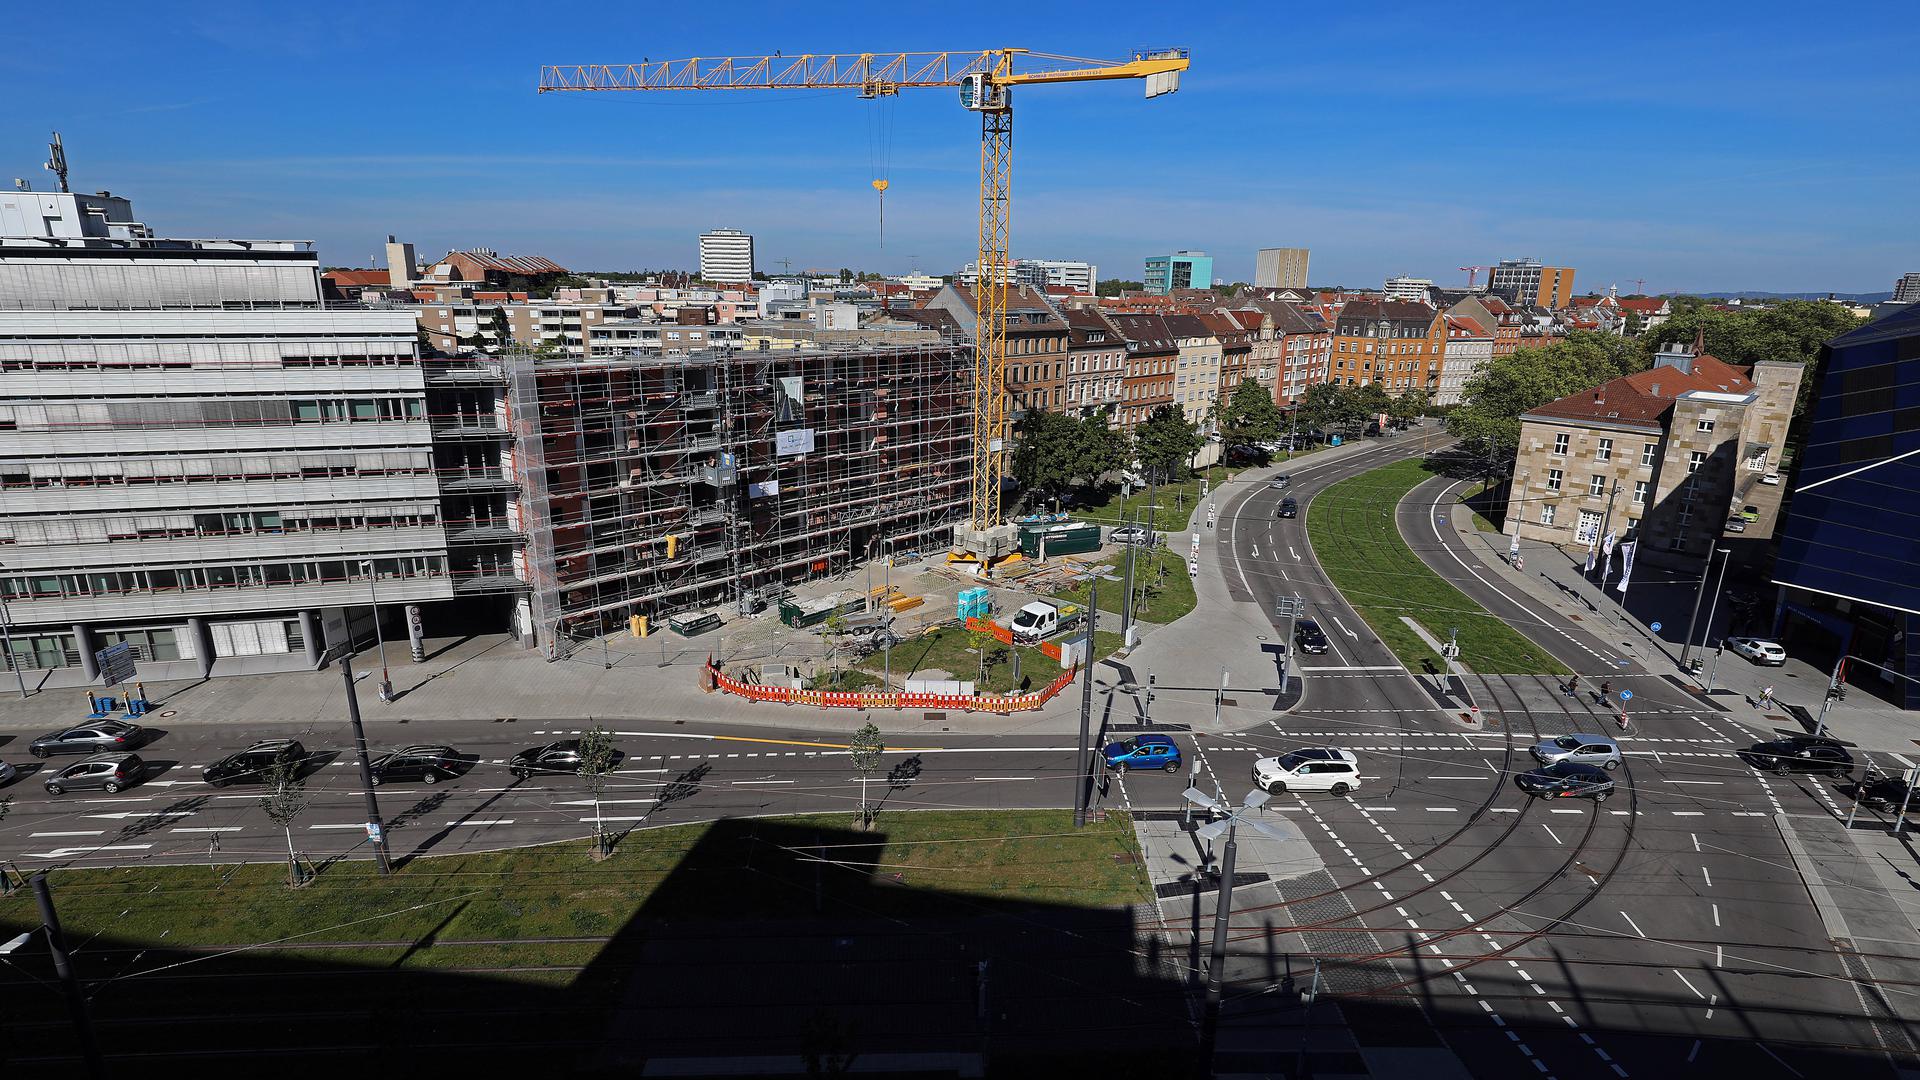 Ideen: Der neue Platz am Ende der Kapellenstraße soll nach Vorstellungen der FDP mit historischen Bezügen gestaltet werden. Im Rathaus findet man das schwierig.